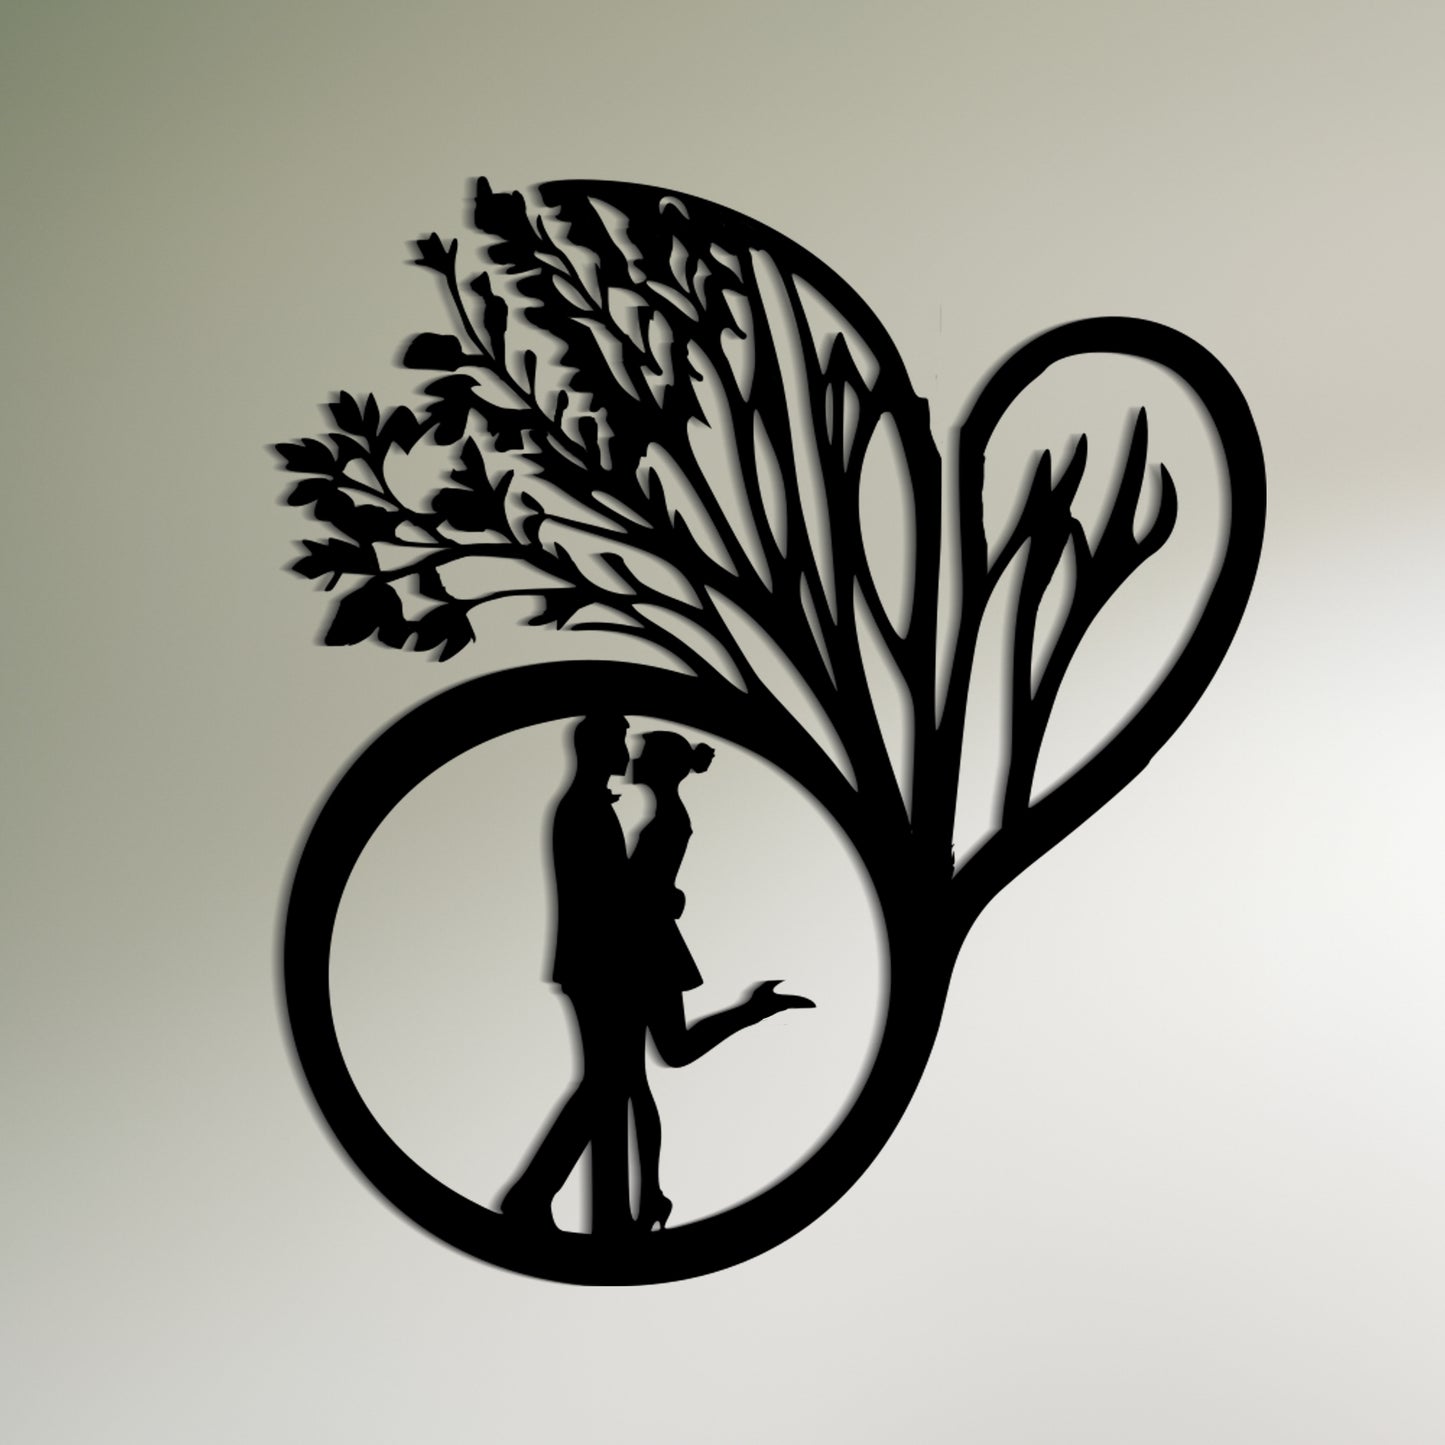 木の下でキスをするカップルのシルエット - ロマンチックな壁の装飾